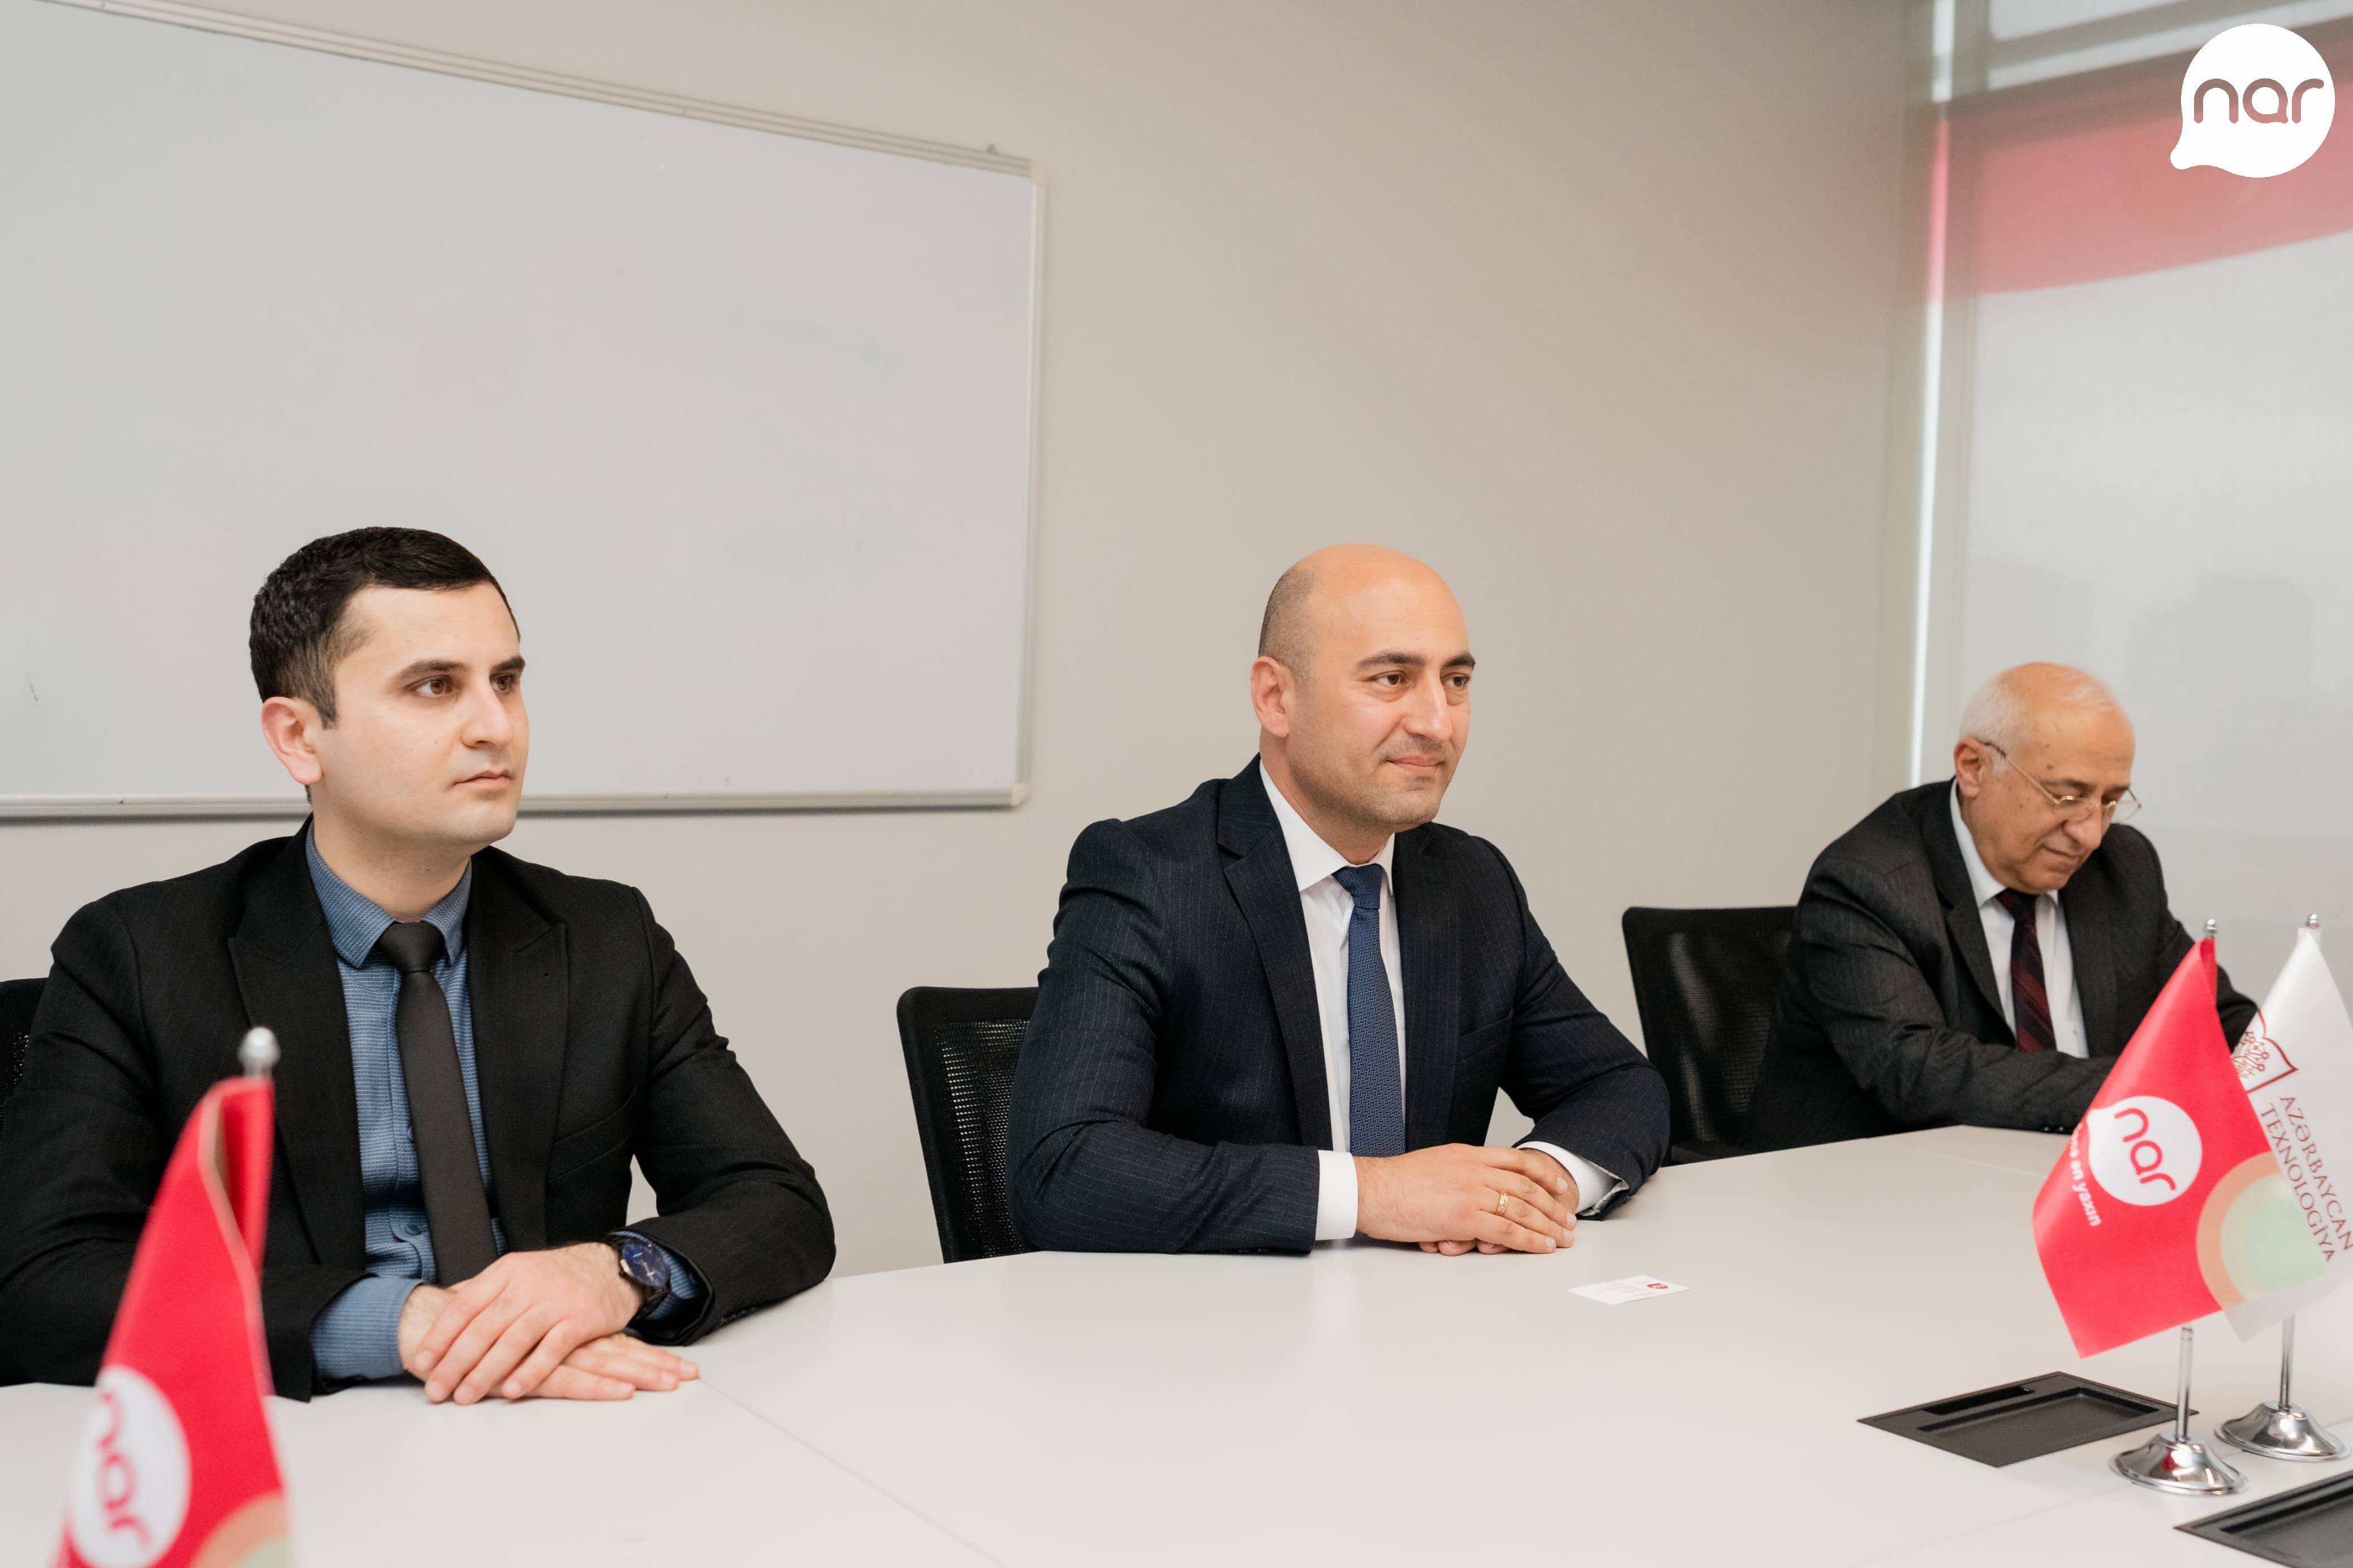 Nar приступил к сотрудничеству с Азербайджанским технологическим университетом